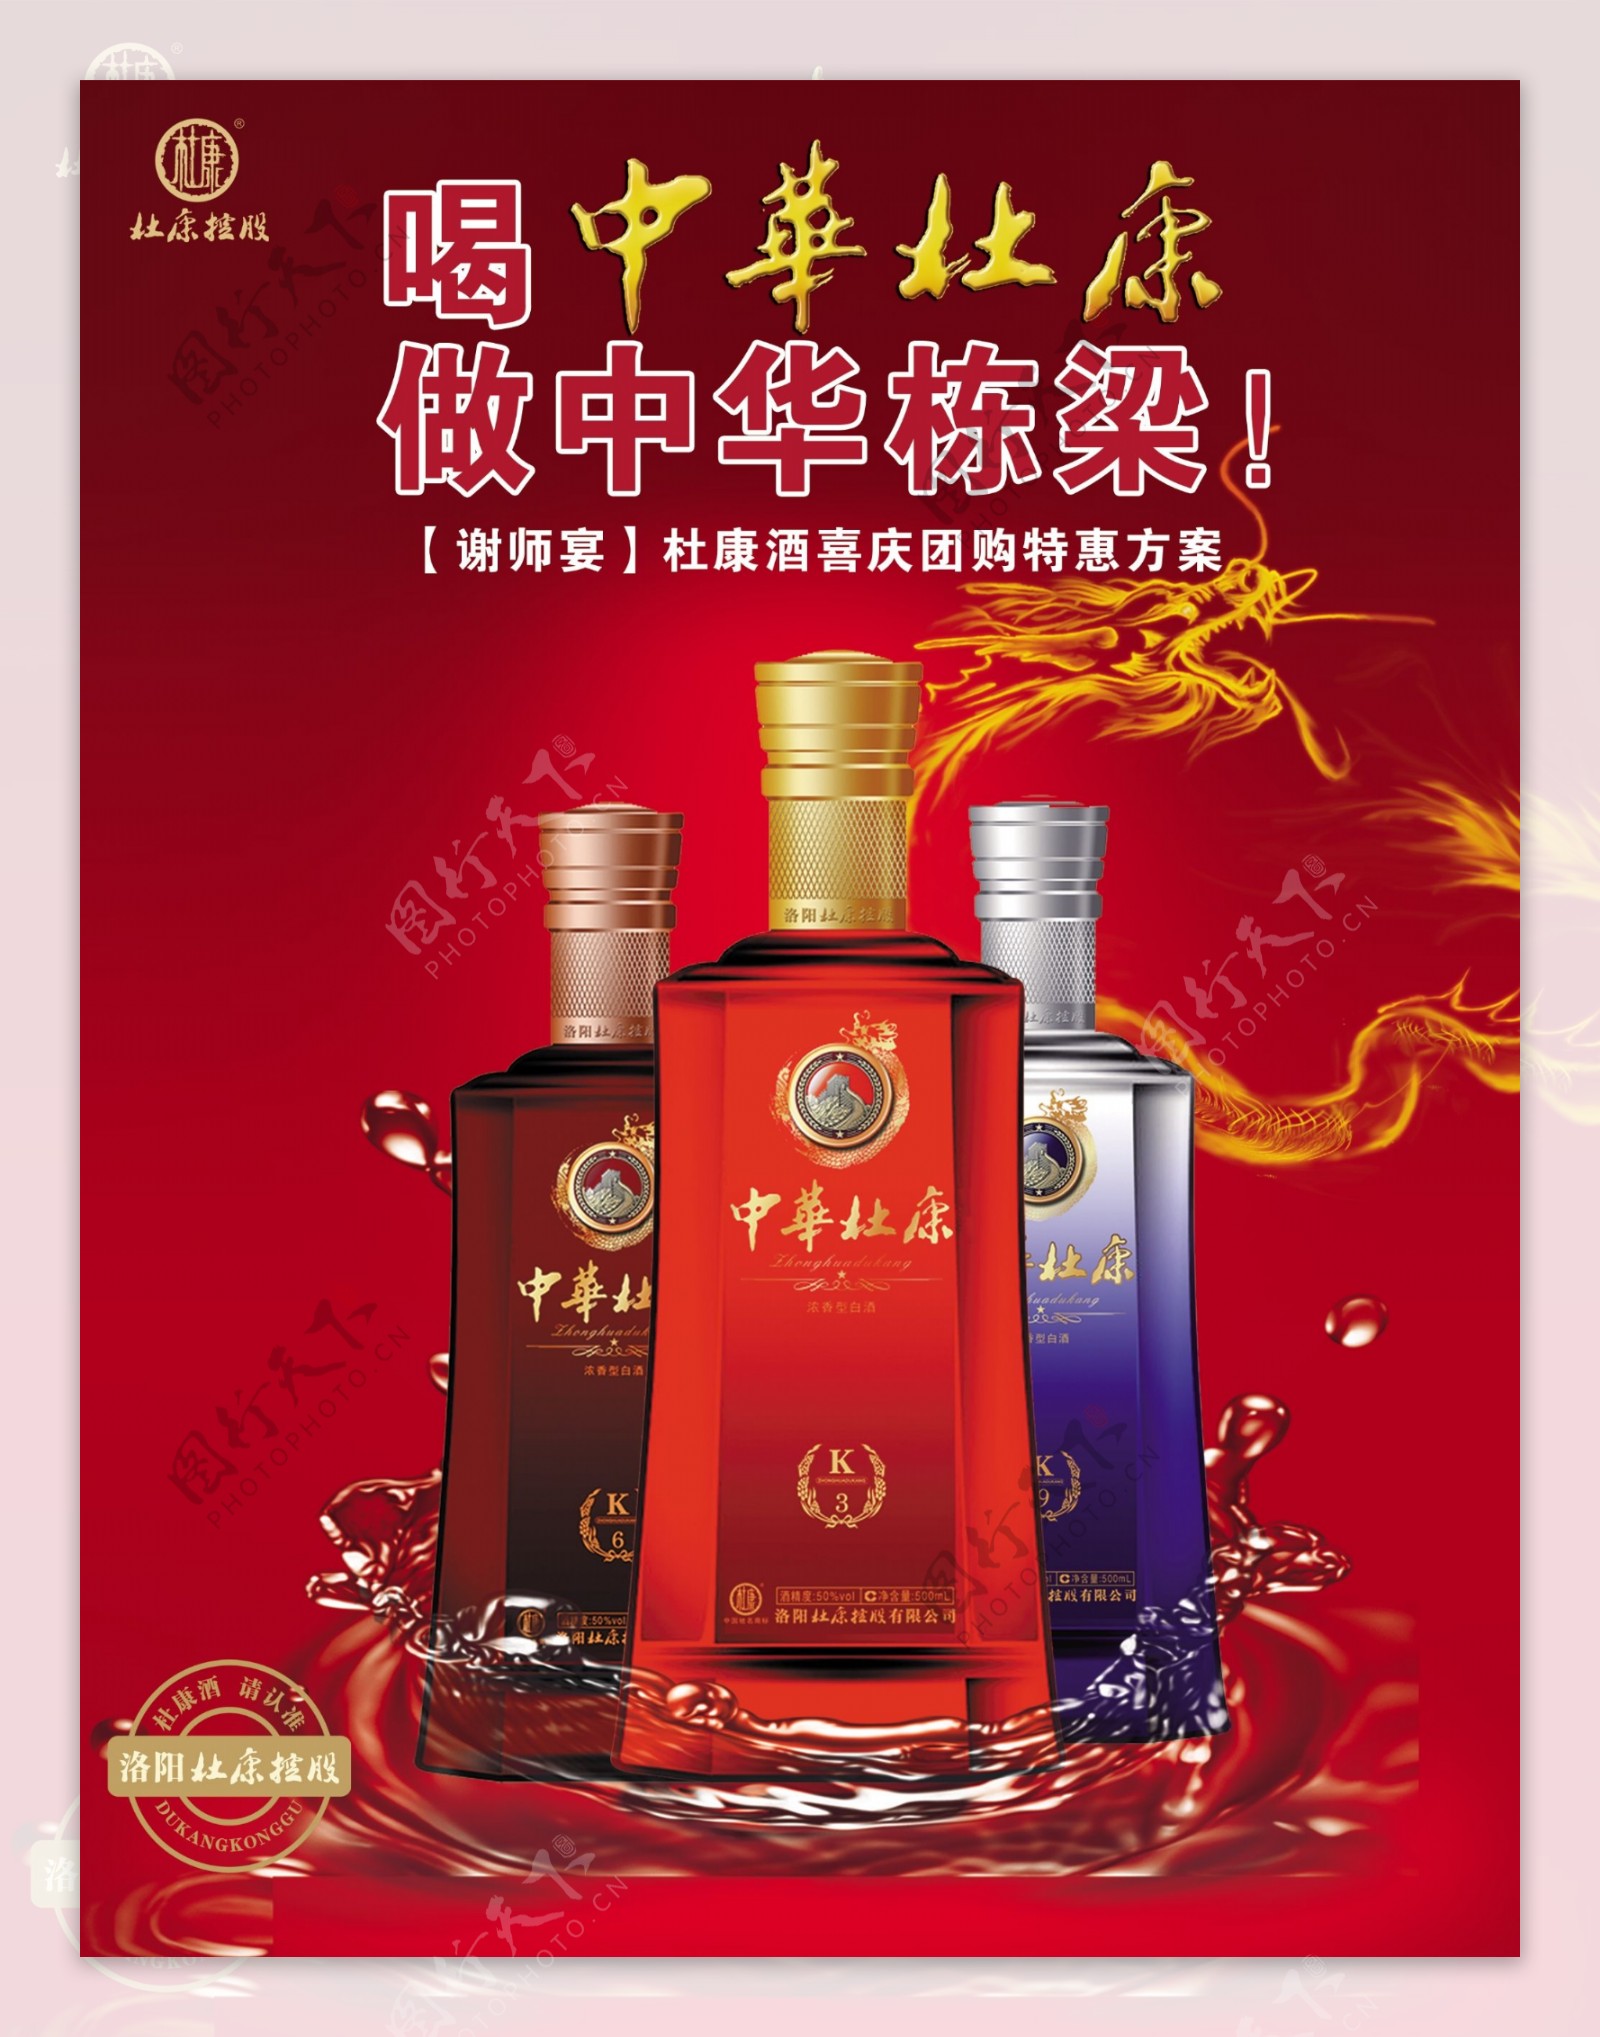 中华杜康酒广告图片